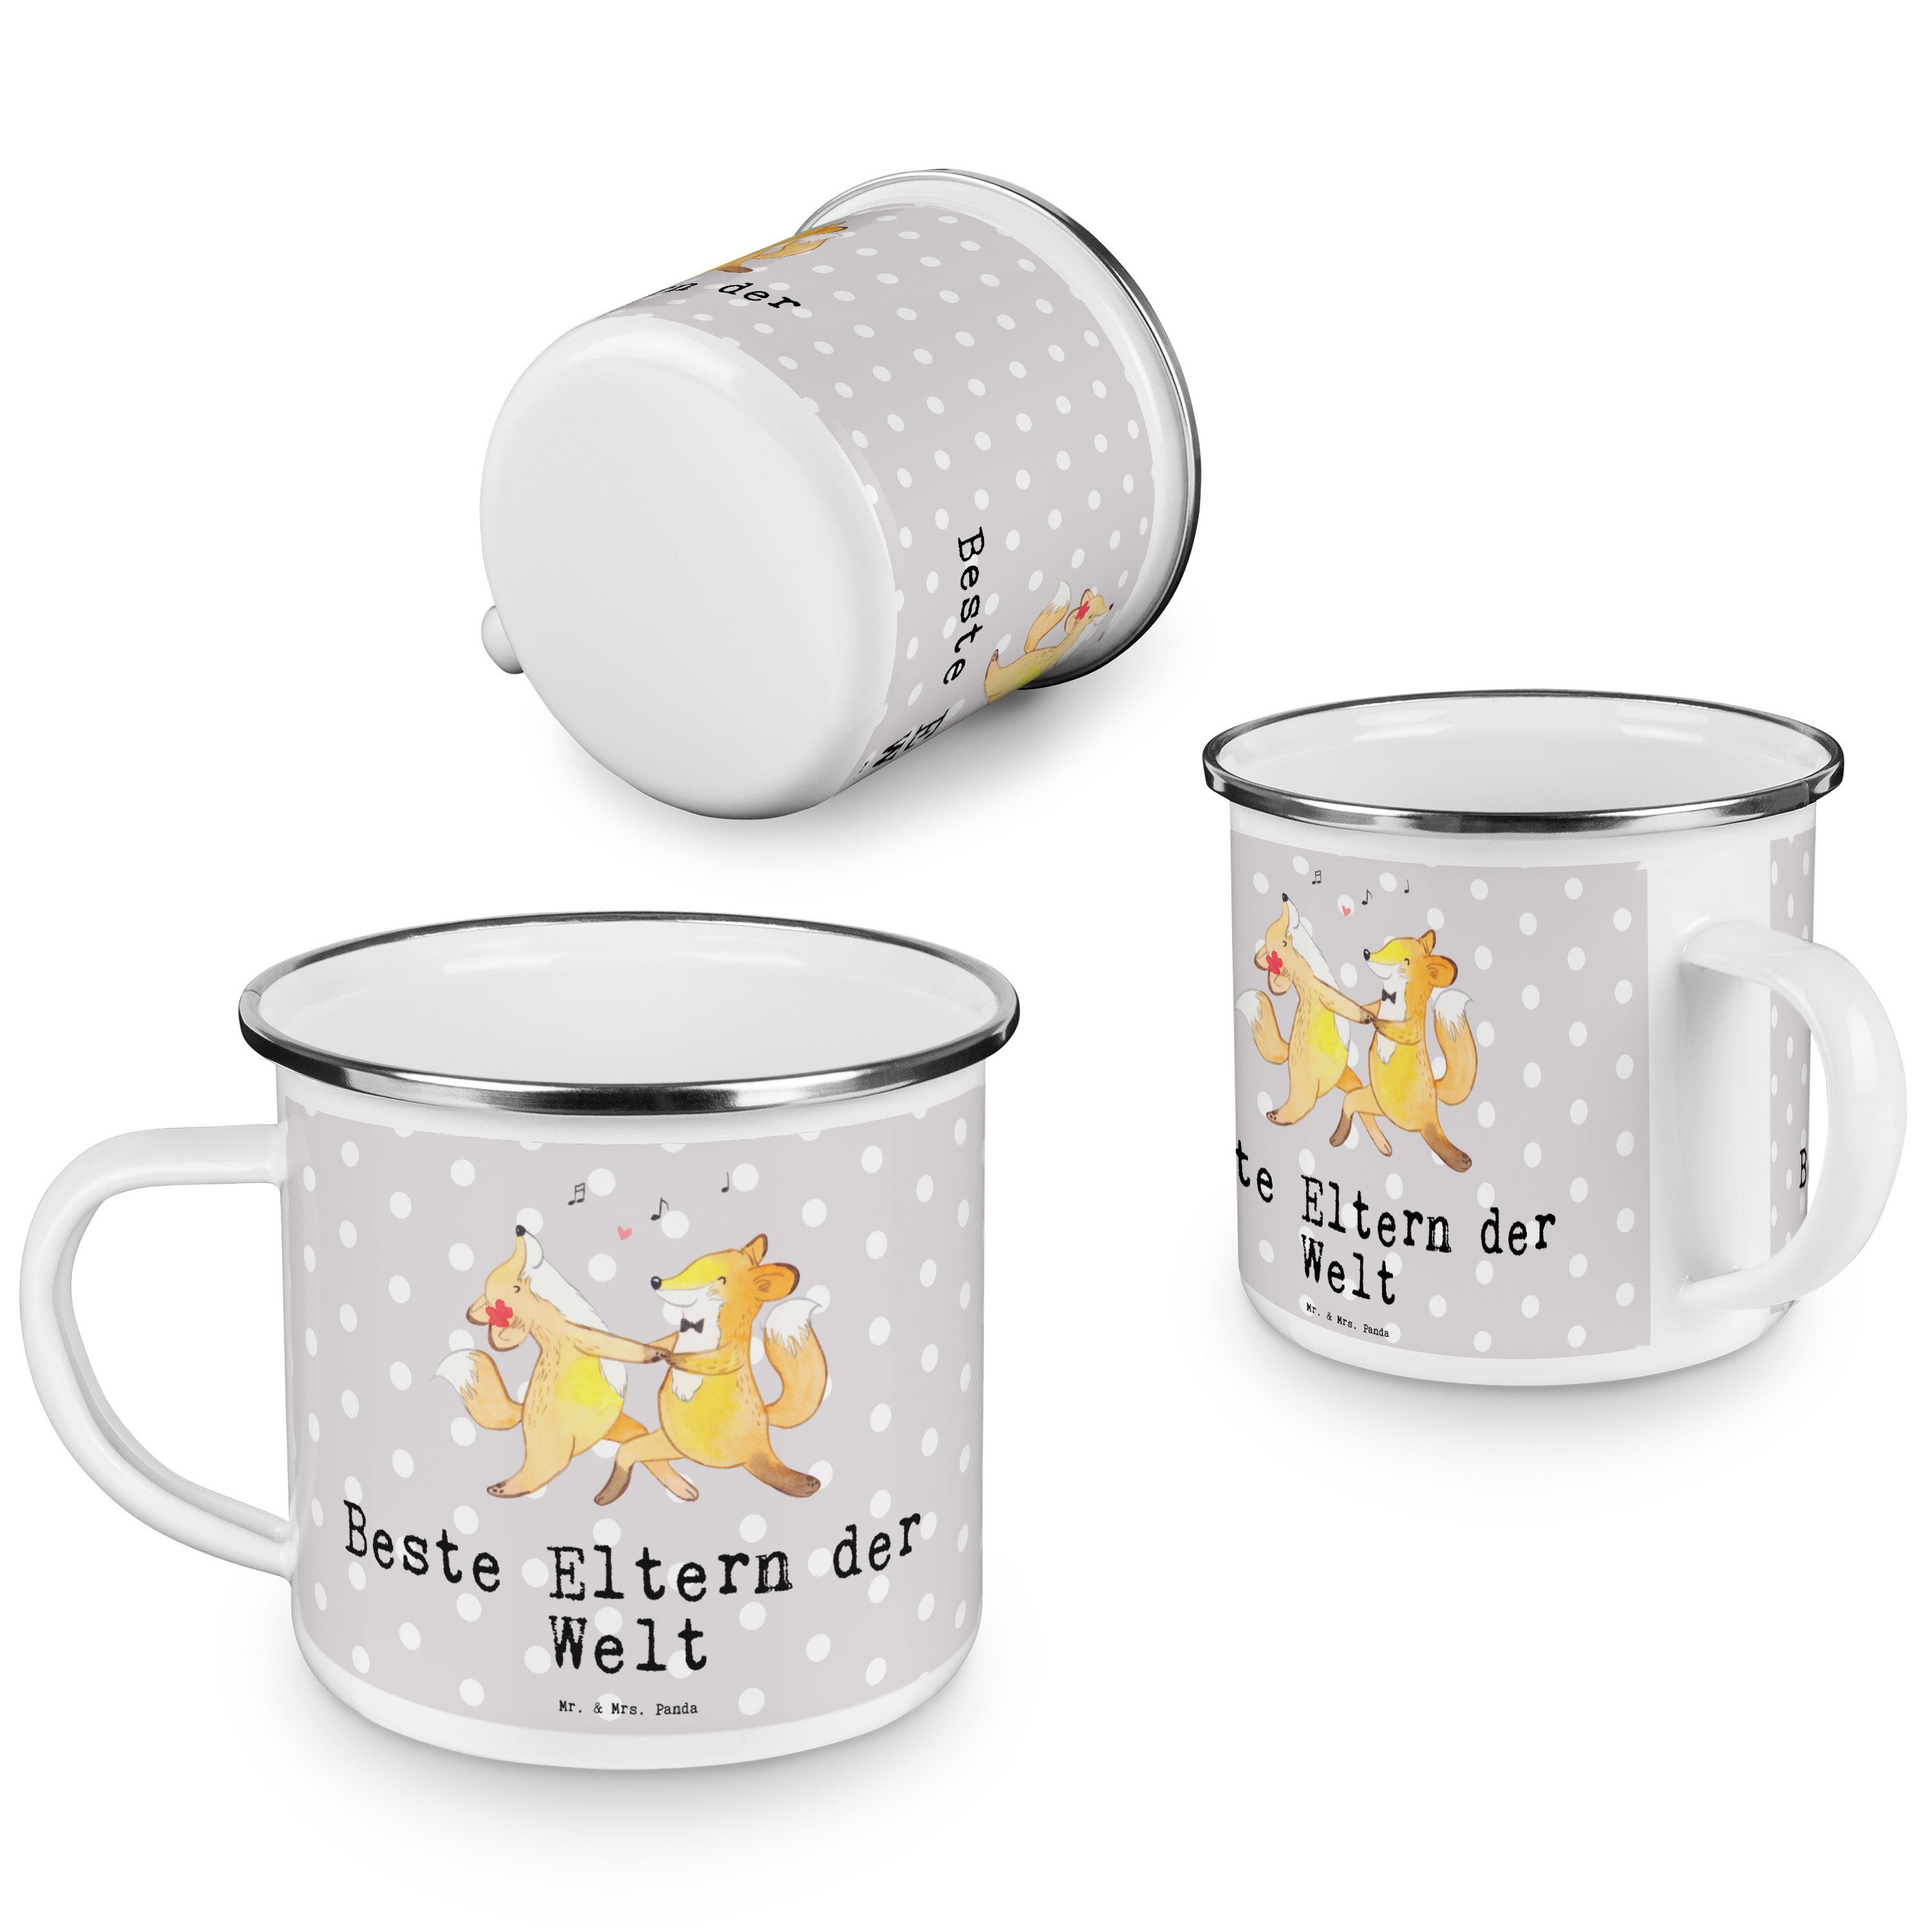 - Pastell - & Geschenk, Mrs. Outdoor Panda der Mr. Welt Becher Eltern Beste Fuchs Grau Tasse, Emaille